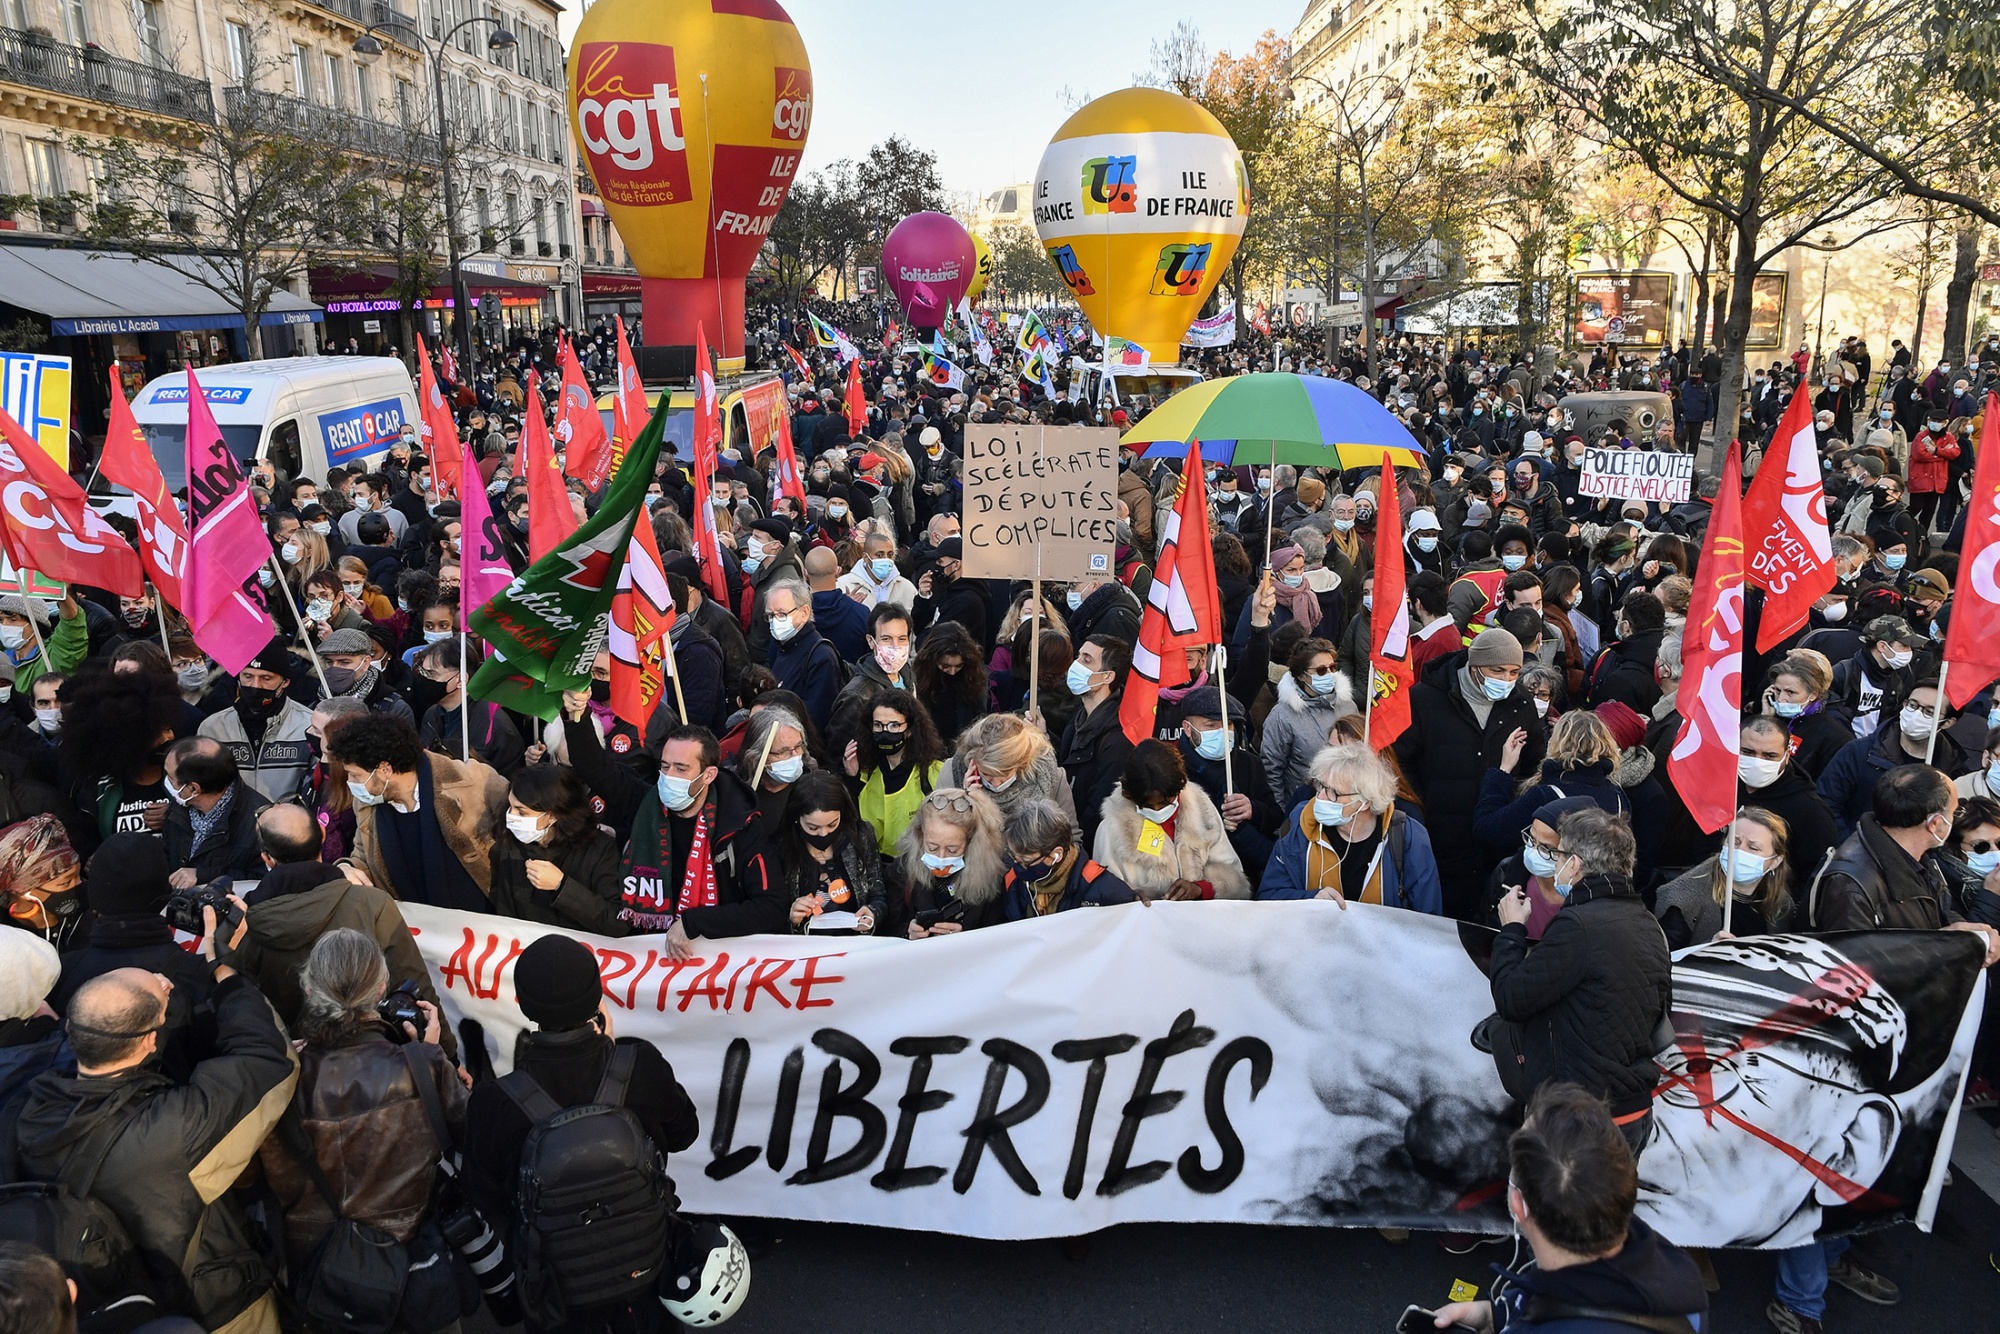 Demonstrators&nbsp;protest against the&nbsp;global security law, at the Place de la Republique in Paris, France, on Nov. 28.&nbsp;